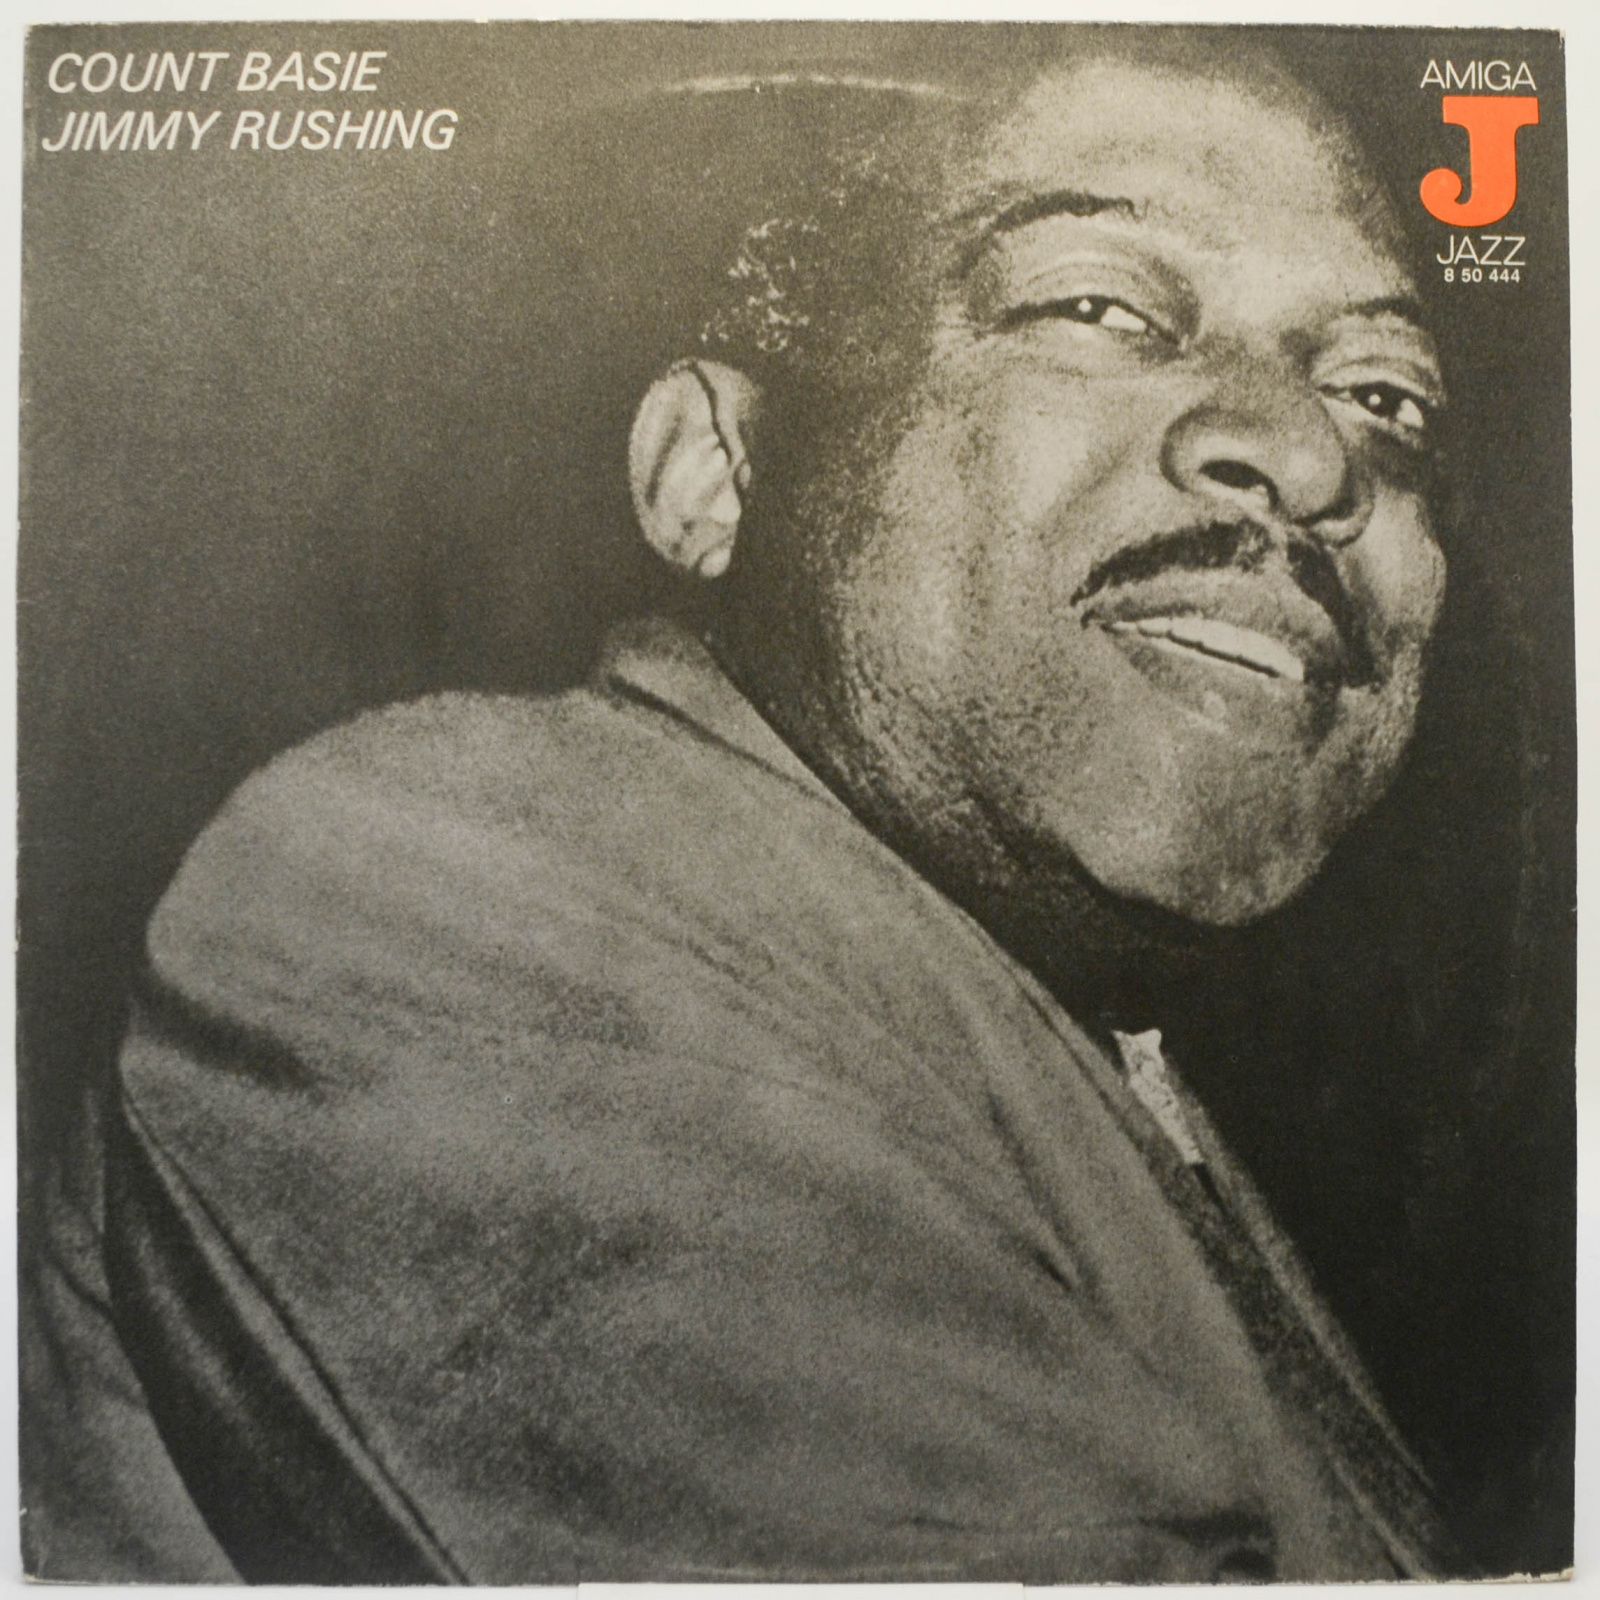 Count Basie / Jimmy Rushing — Count Basie - Jimmy Rushing (1947 - 1949), 1977